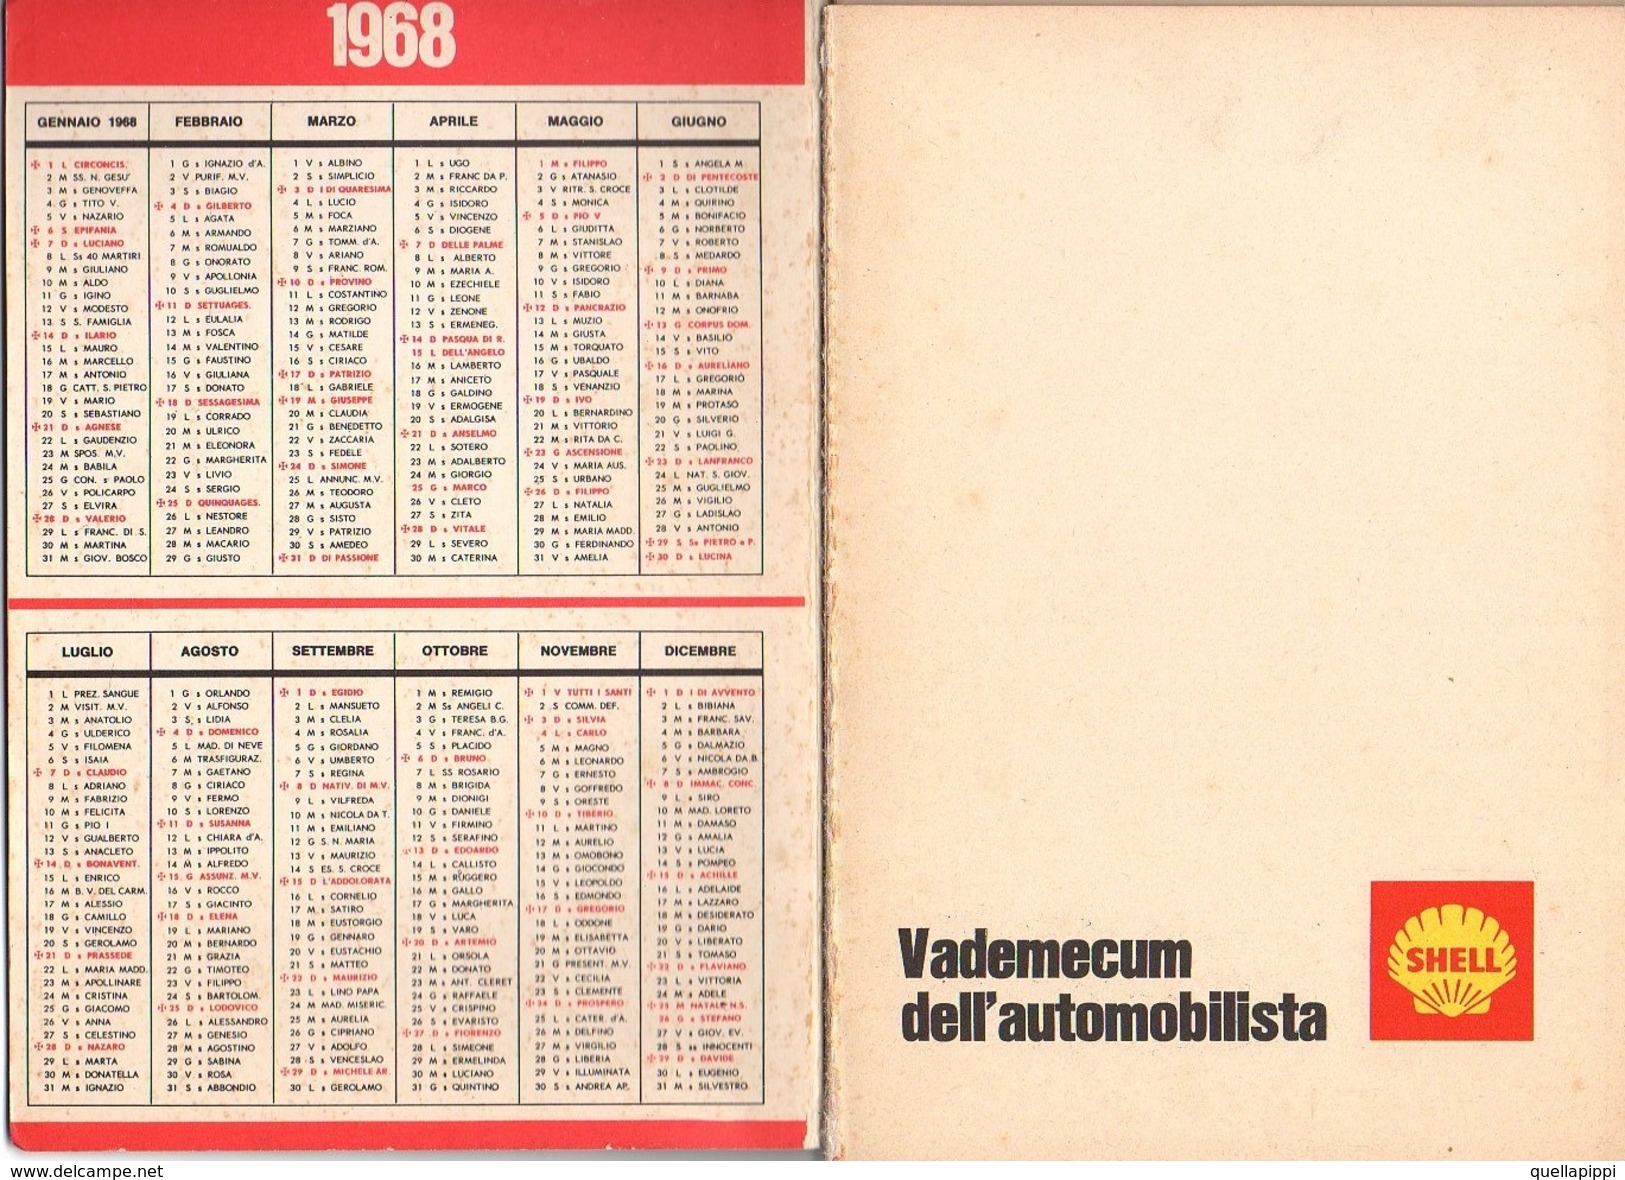 05725 " SEGNALETICA ED EDUCAZIONE STRADALE - SHELL VADEMECUM DELL'AUTOMOBILISTA - 1968" OPUSCOLO PUBBLICITARIO ORIGINALE - Automobili